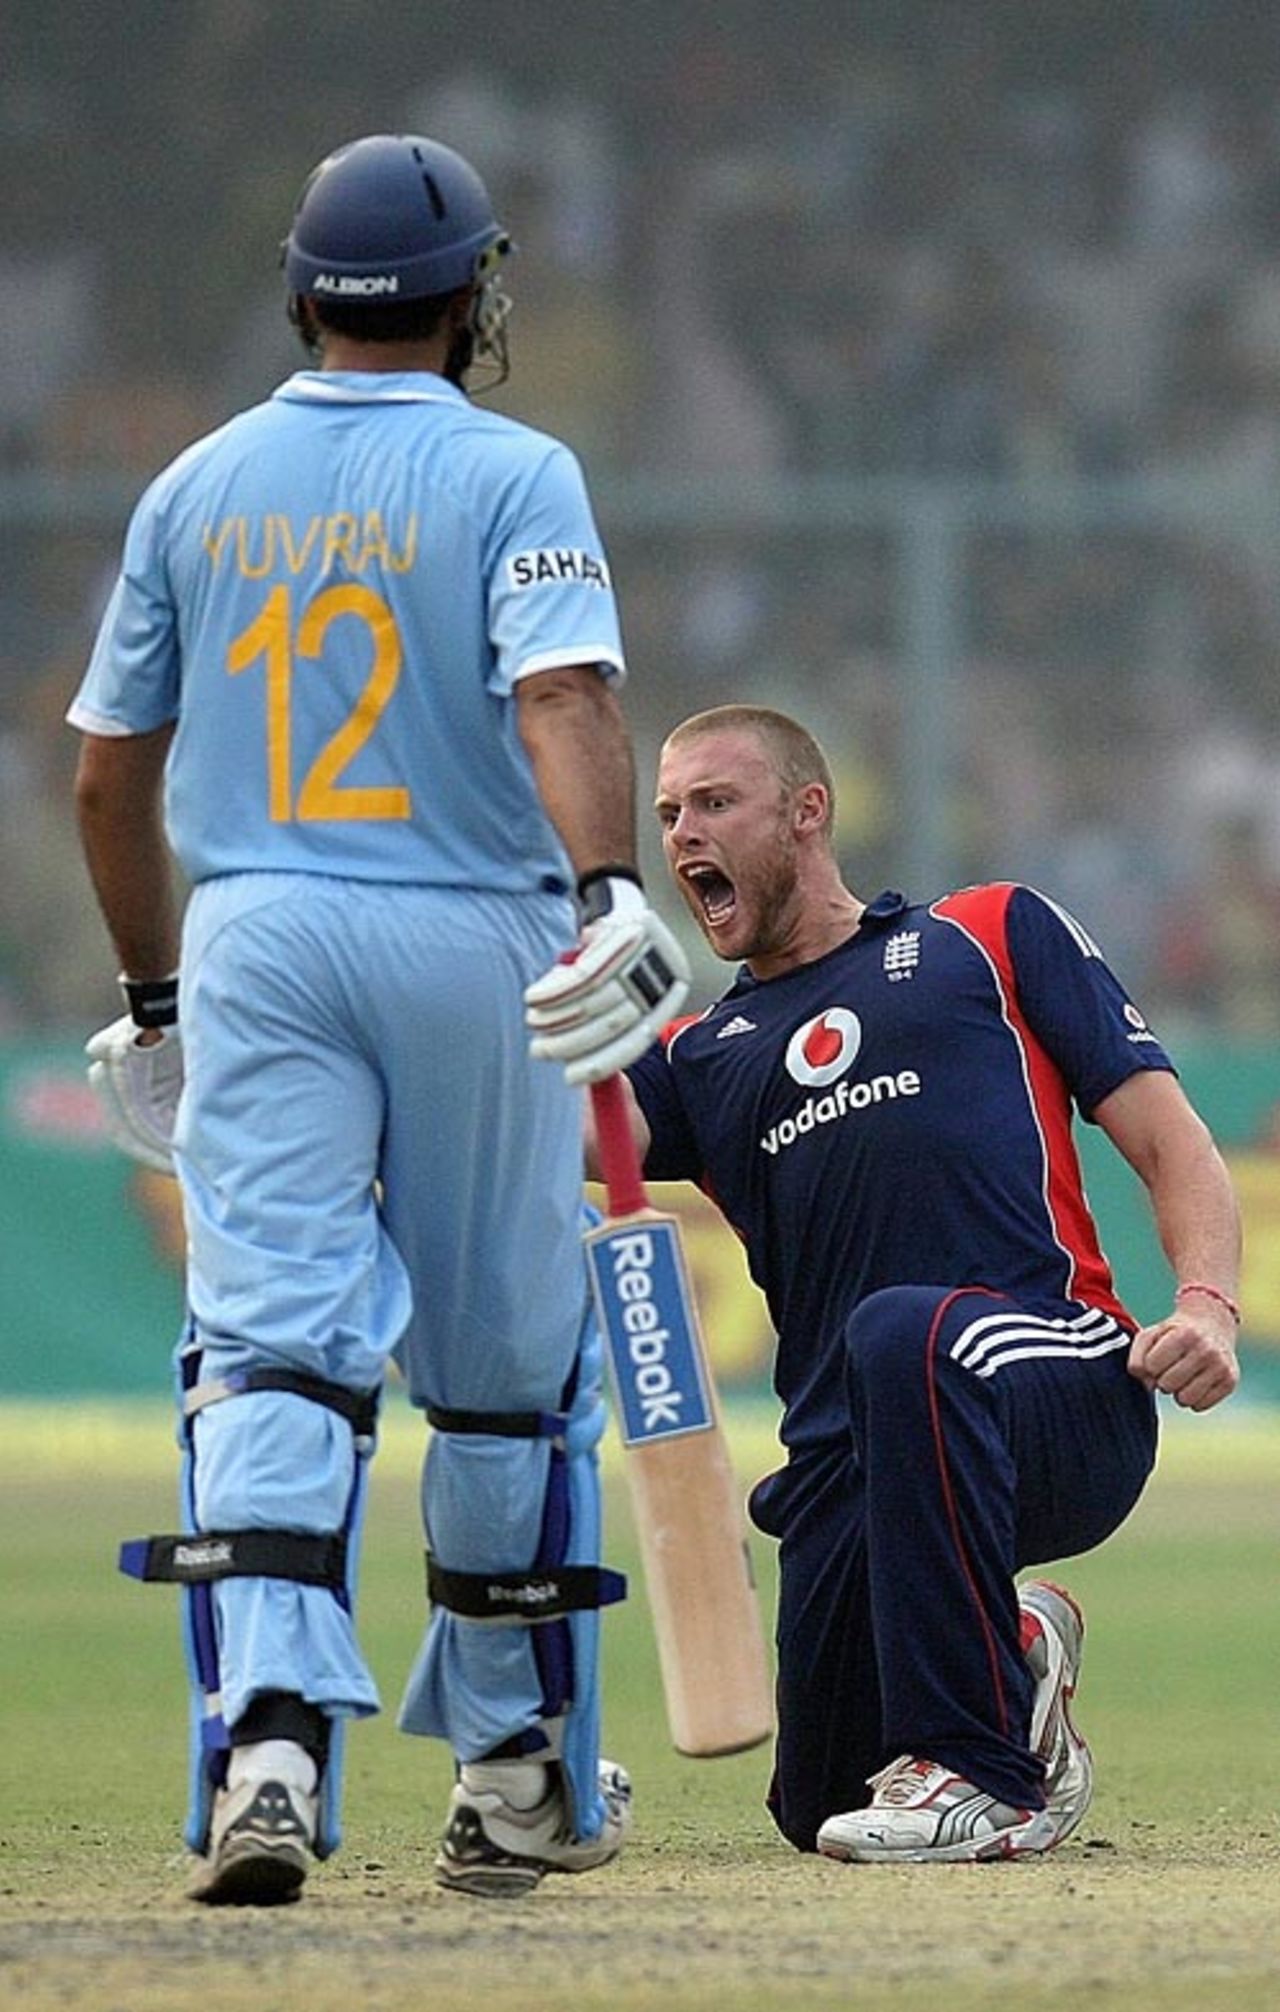 Andrew Flintoff is pumped up after dismissing Yuvraj Singh, India v England, 3rd ODI, Kanpur, November 20, 2008